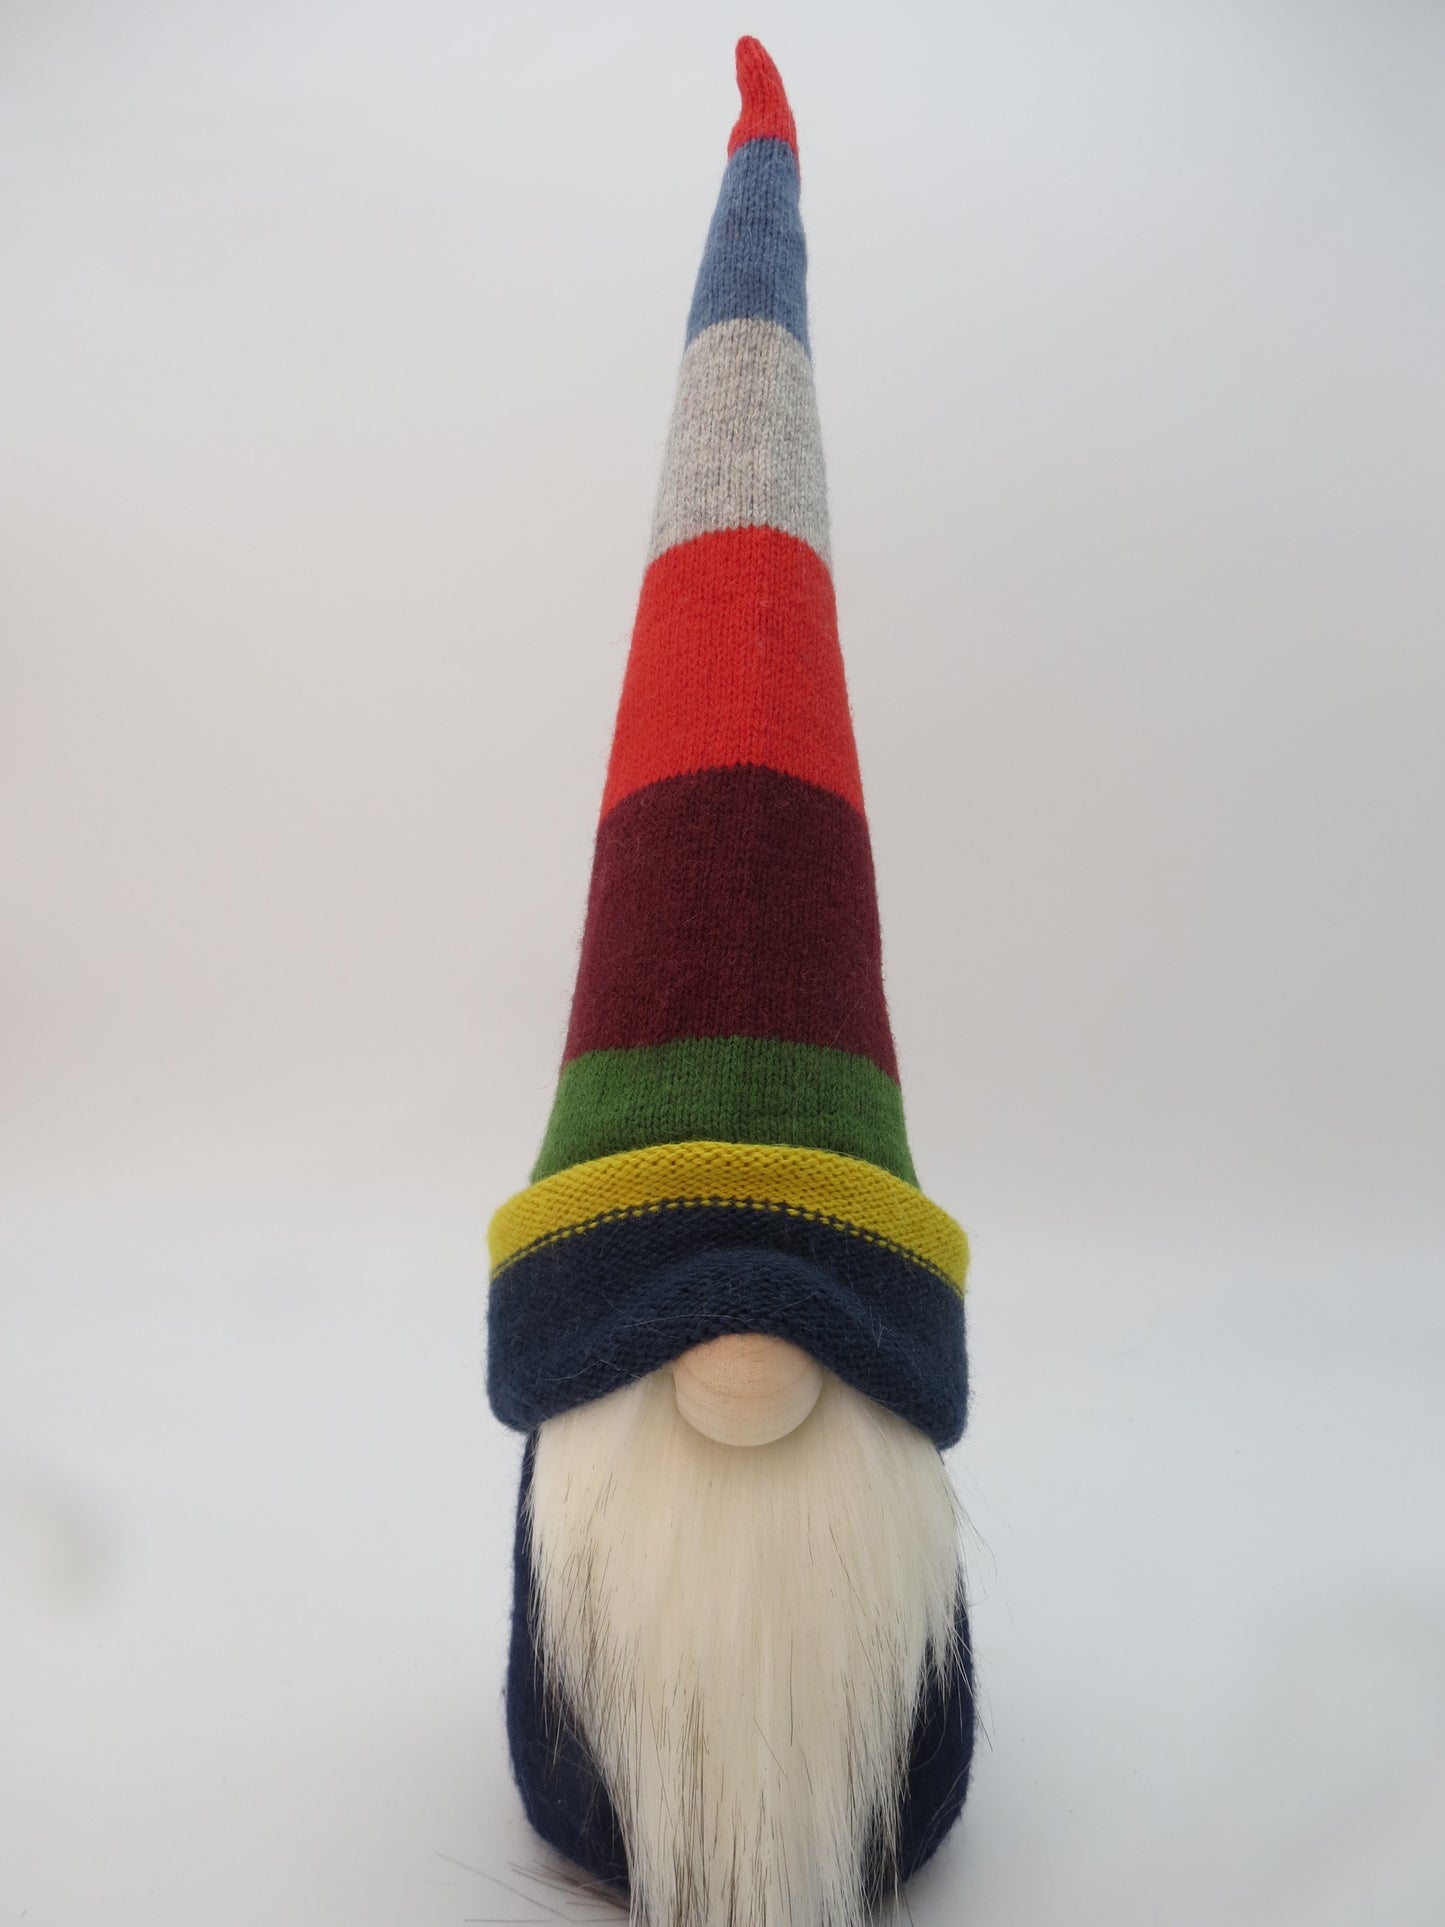 15" (38.1 cm) Medium Gnome (6044) - Multi Colour/Stripe